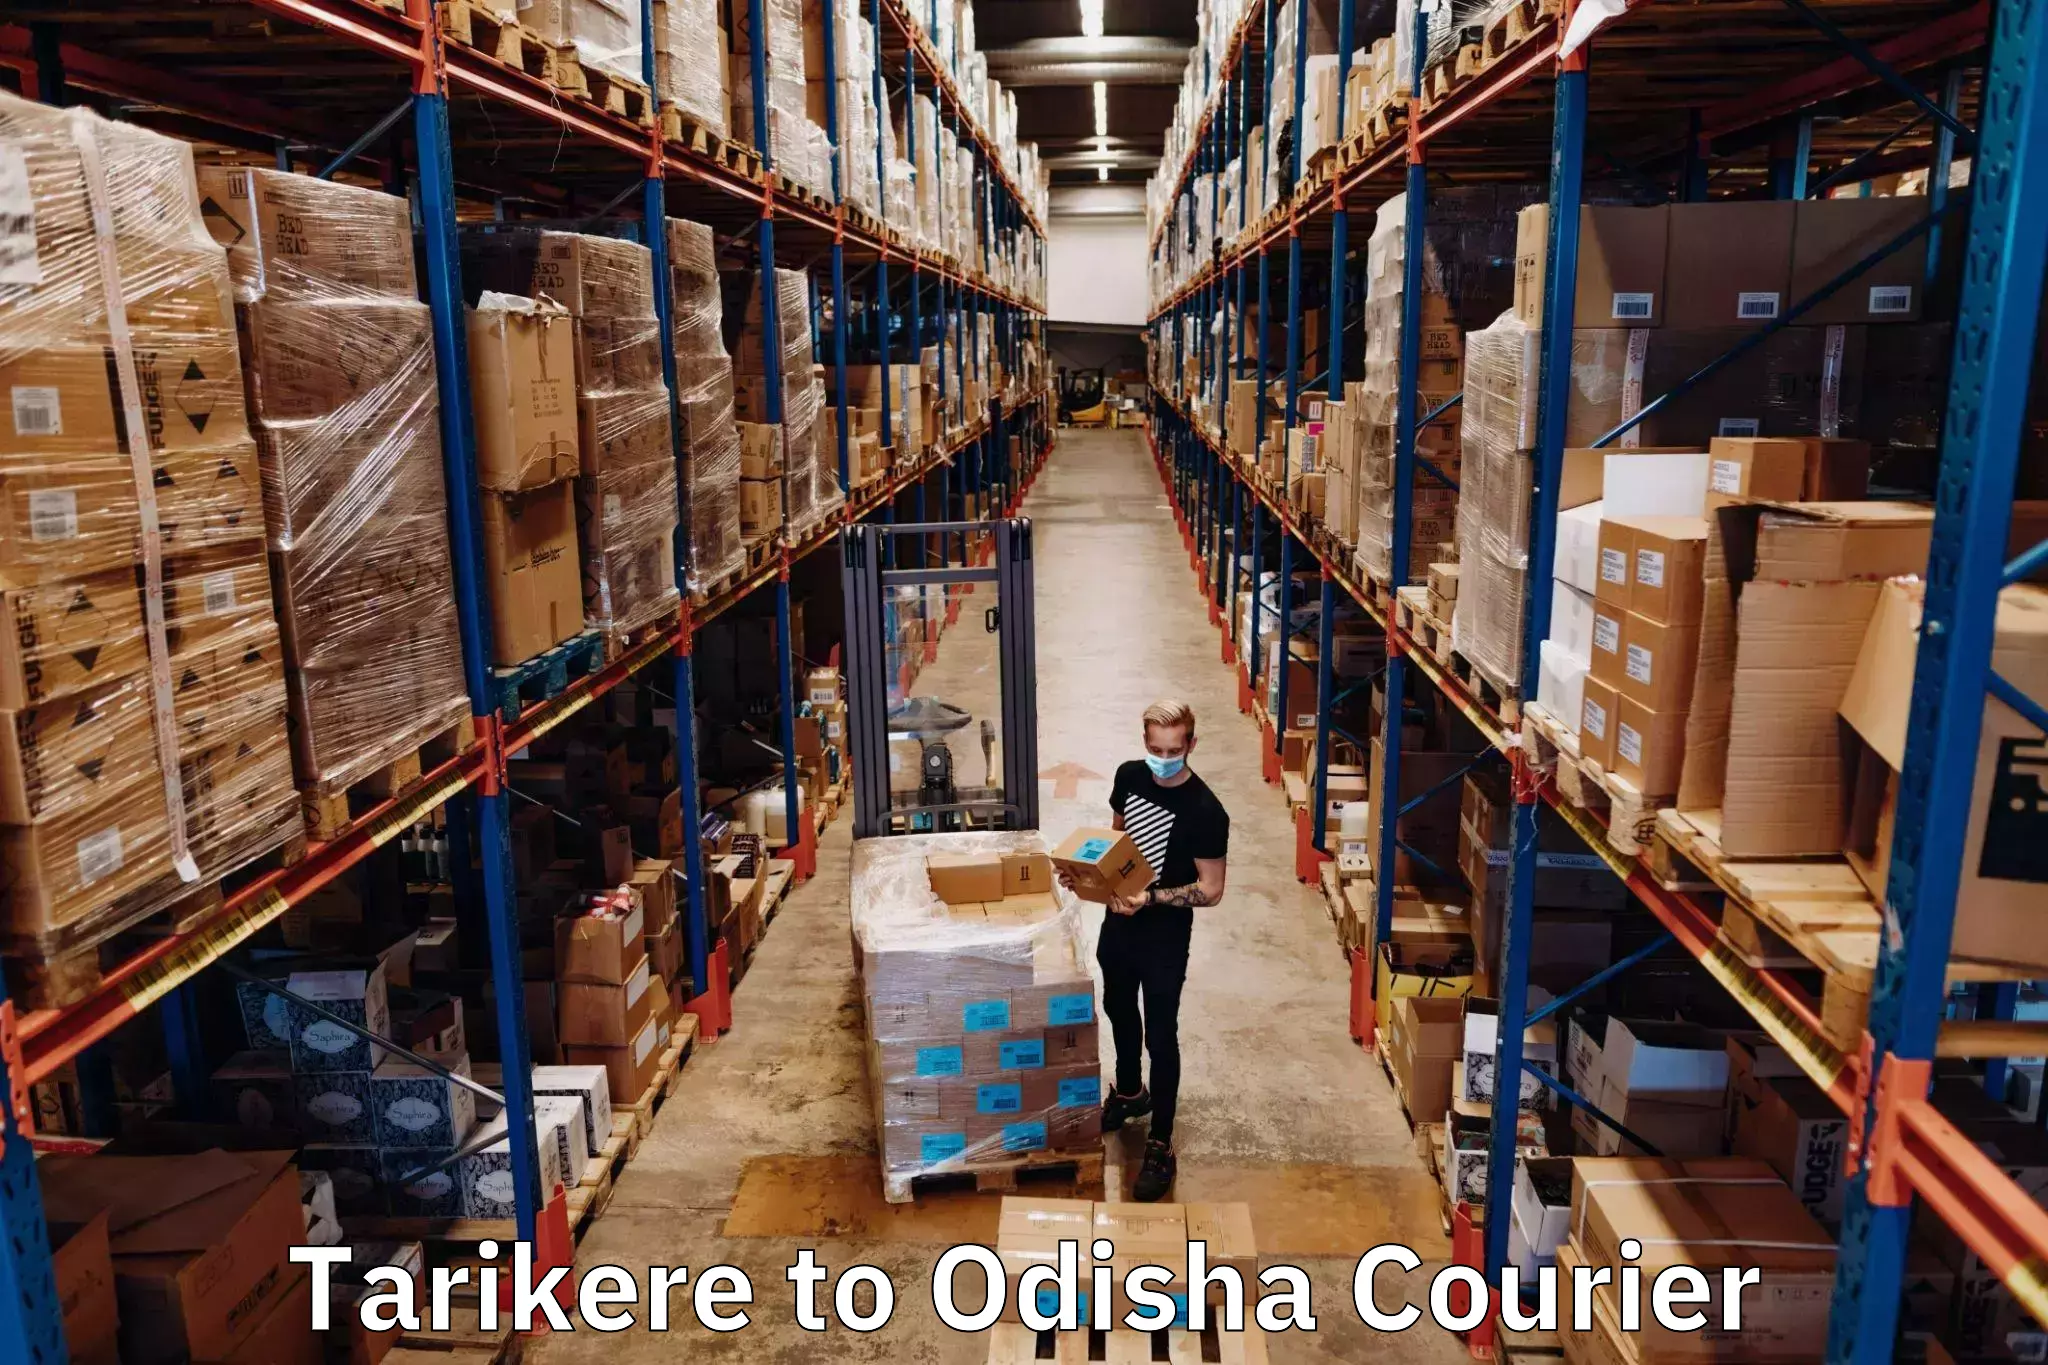 Next-generation courier services Tarikere to Raikia